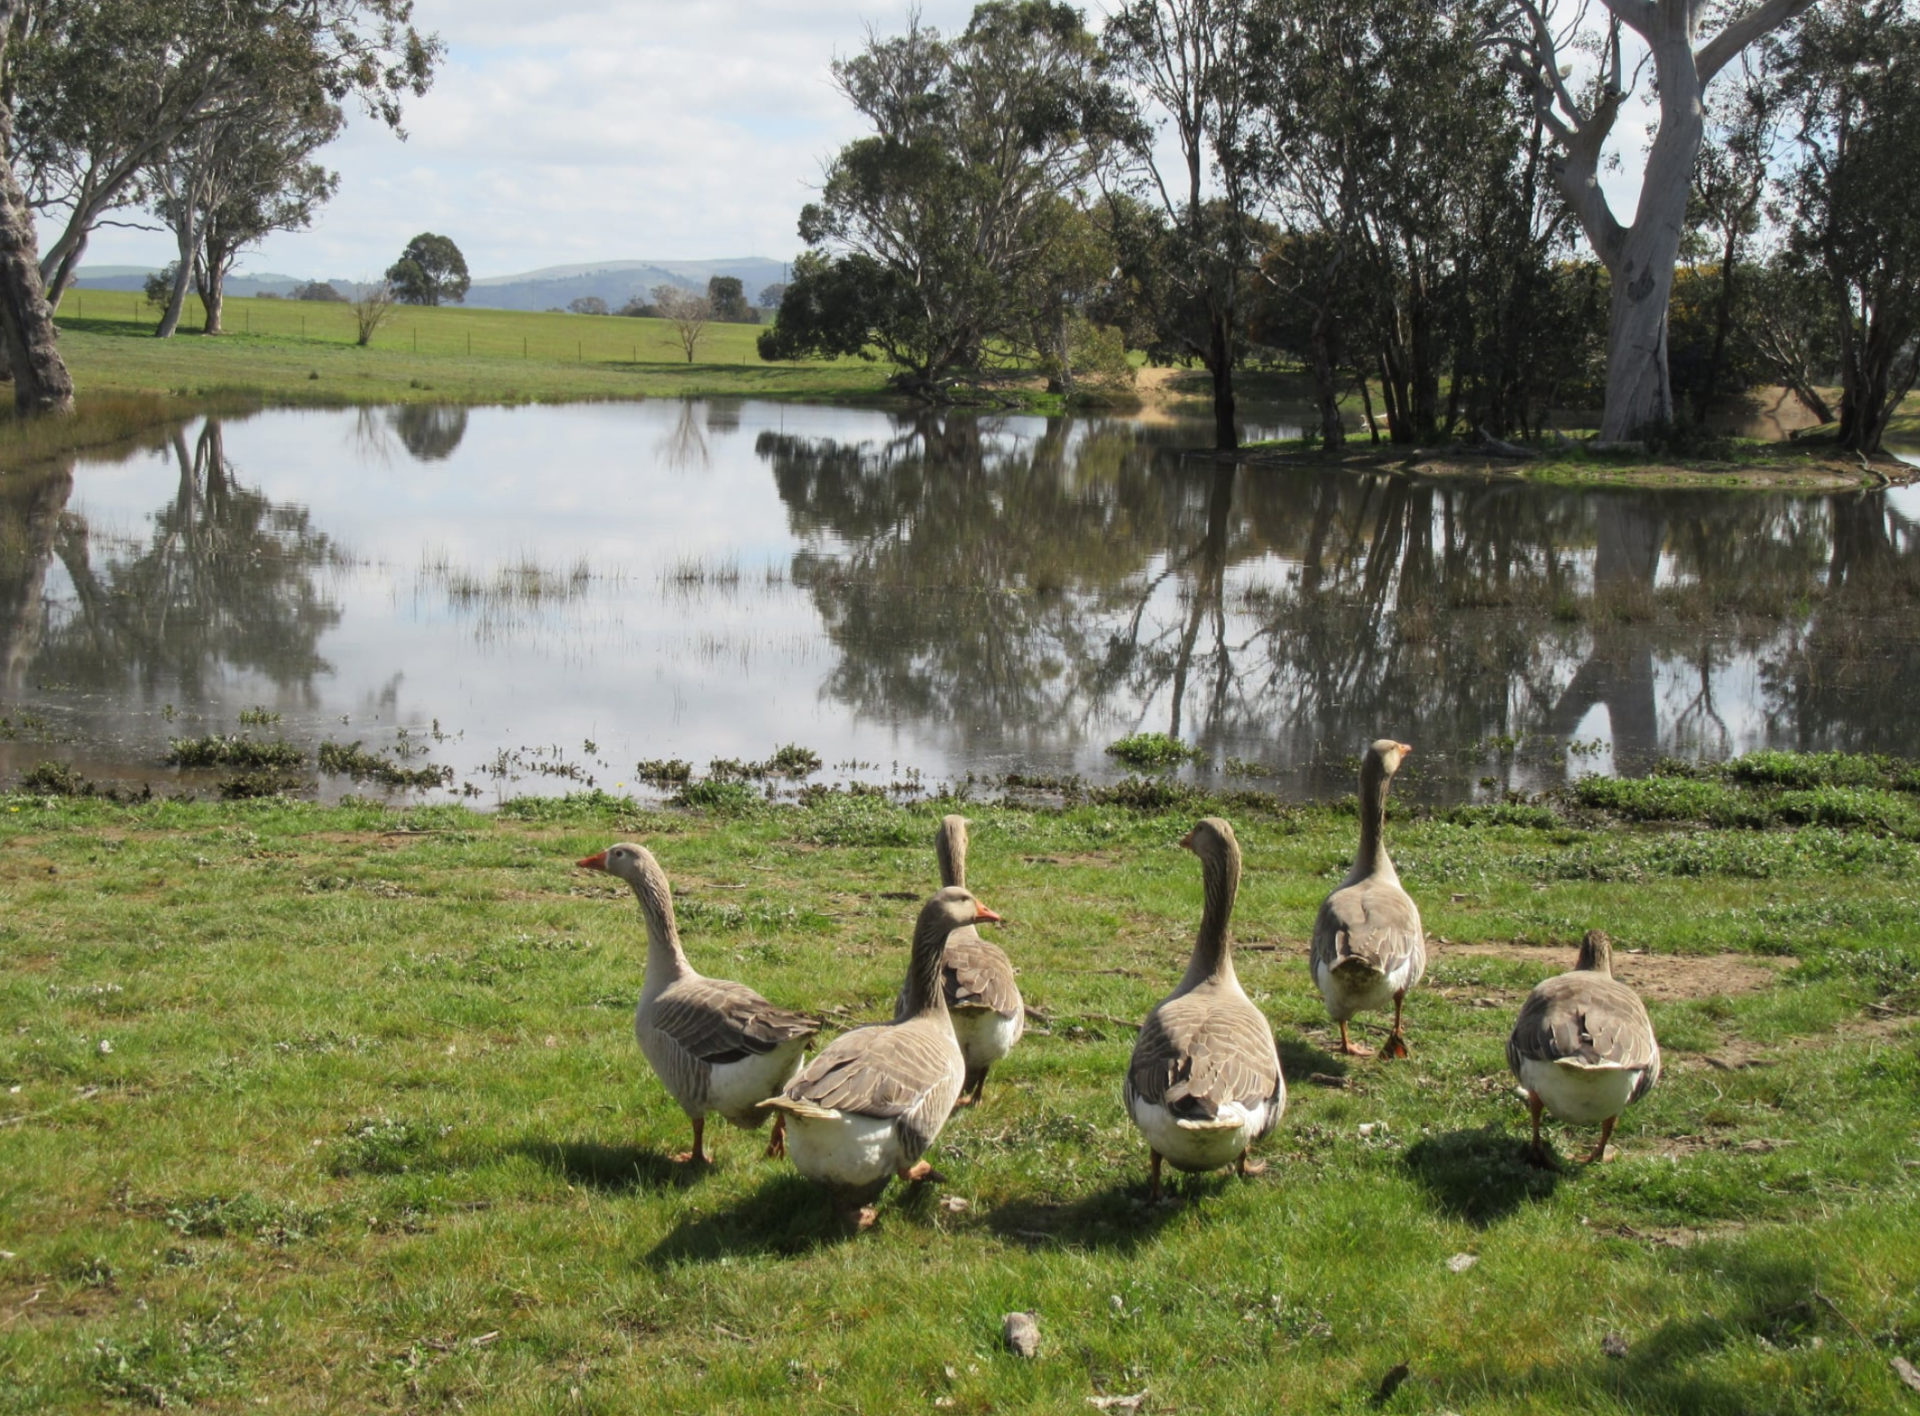 Euralie geese